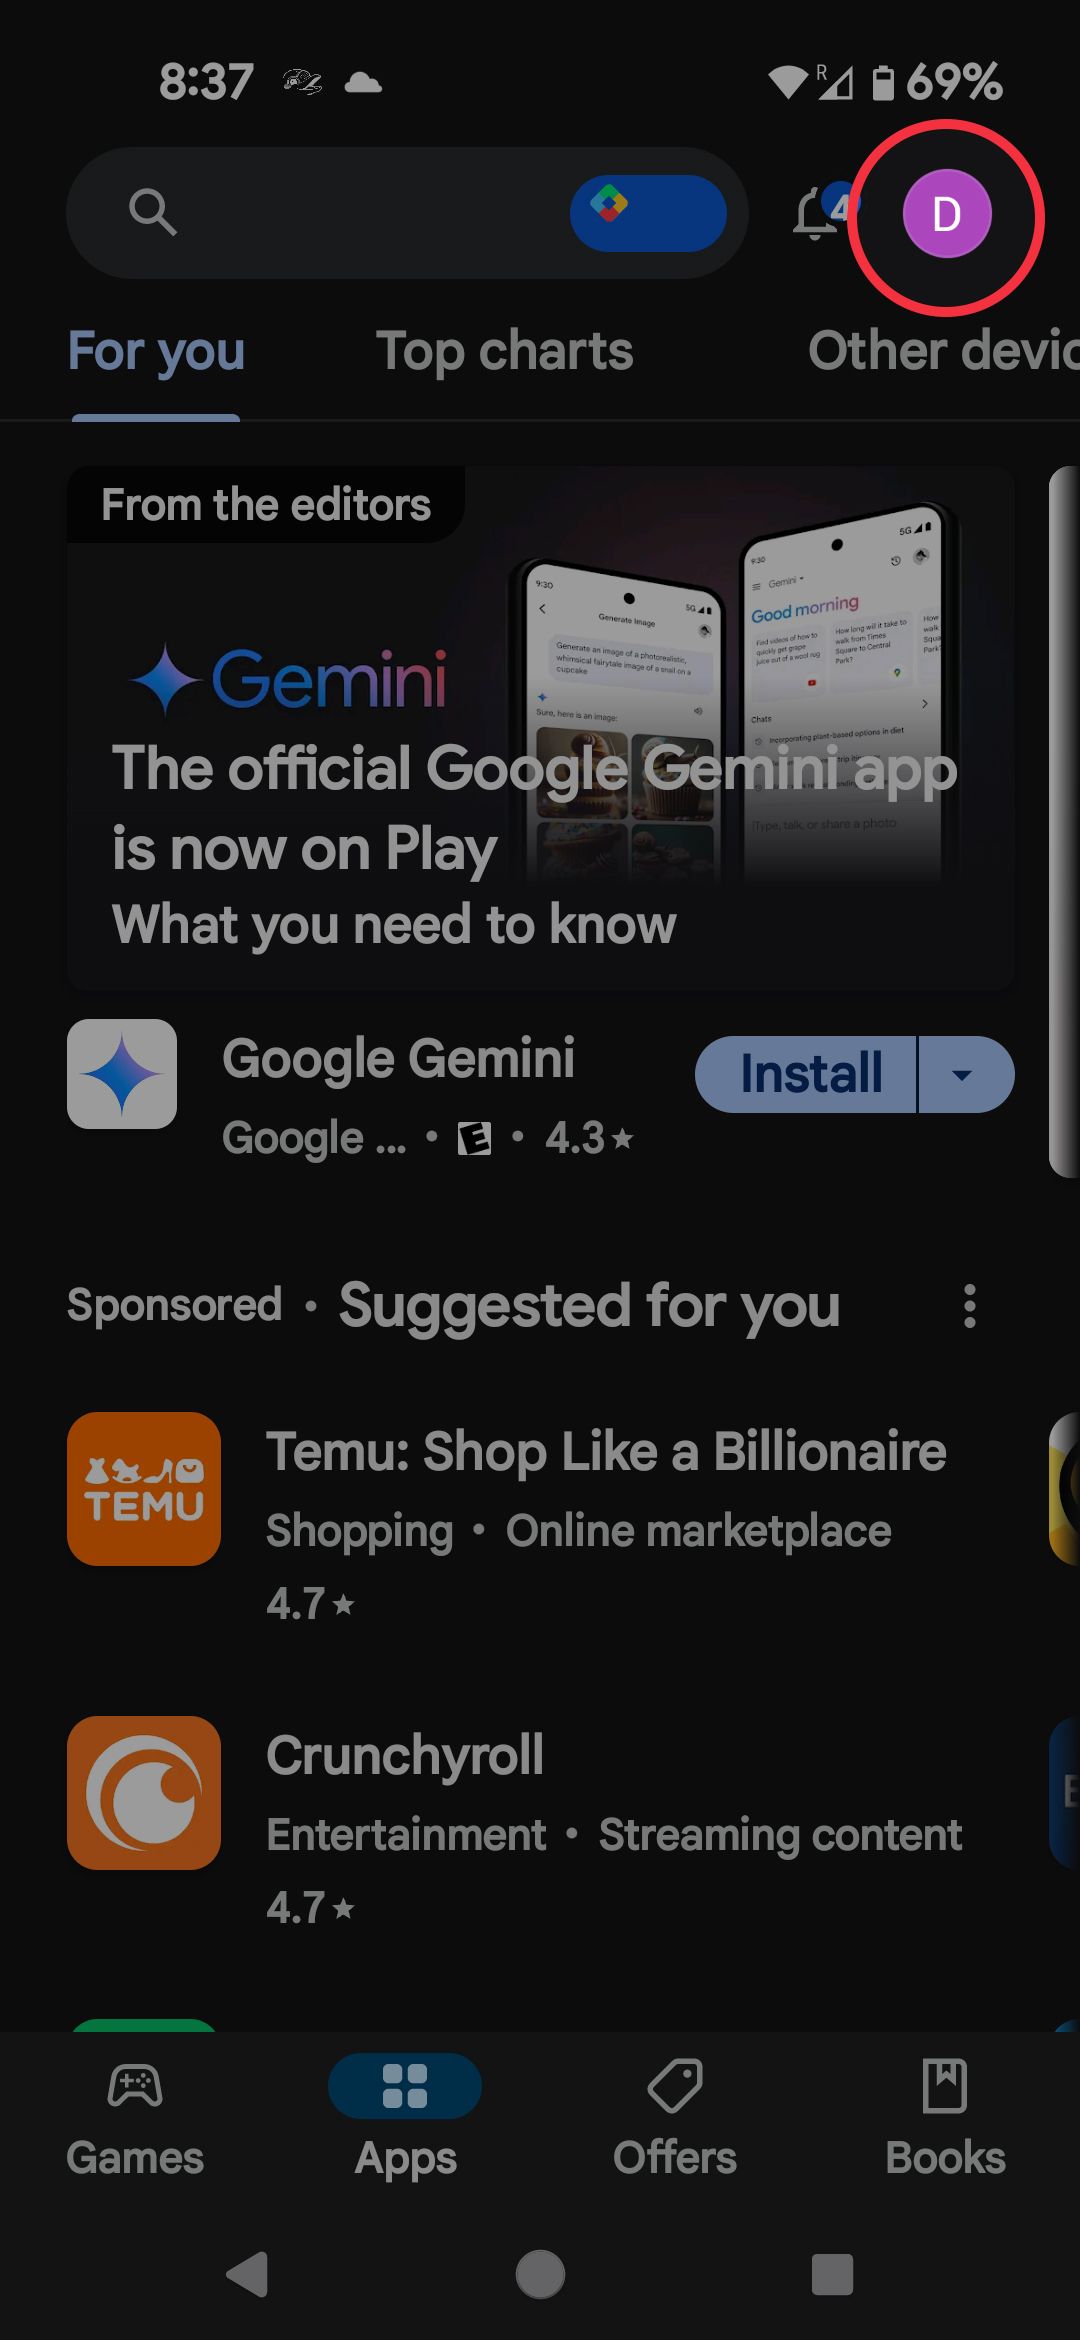 Tela inicial da Google Play Store destacando o ícone do perfil